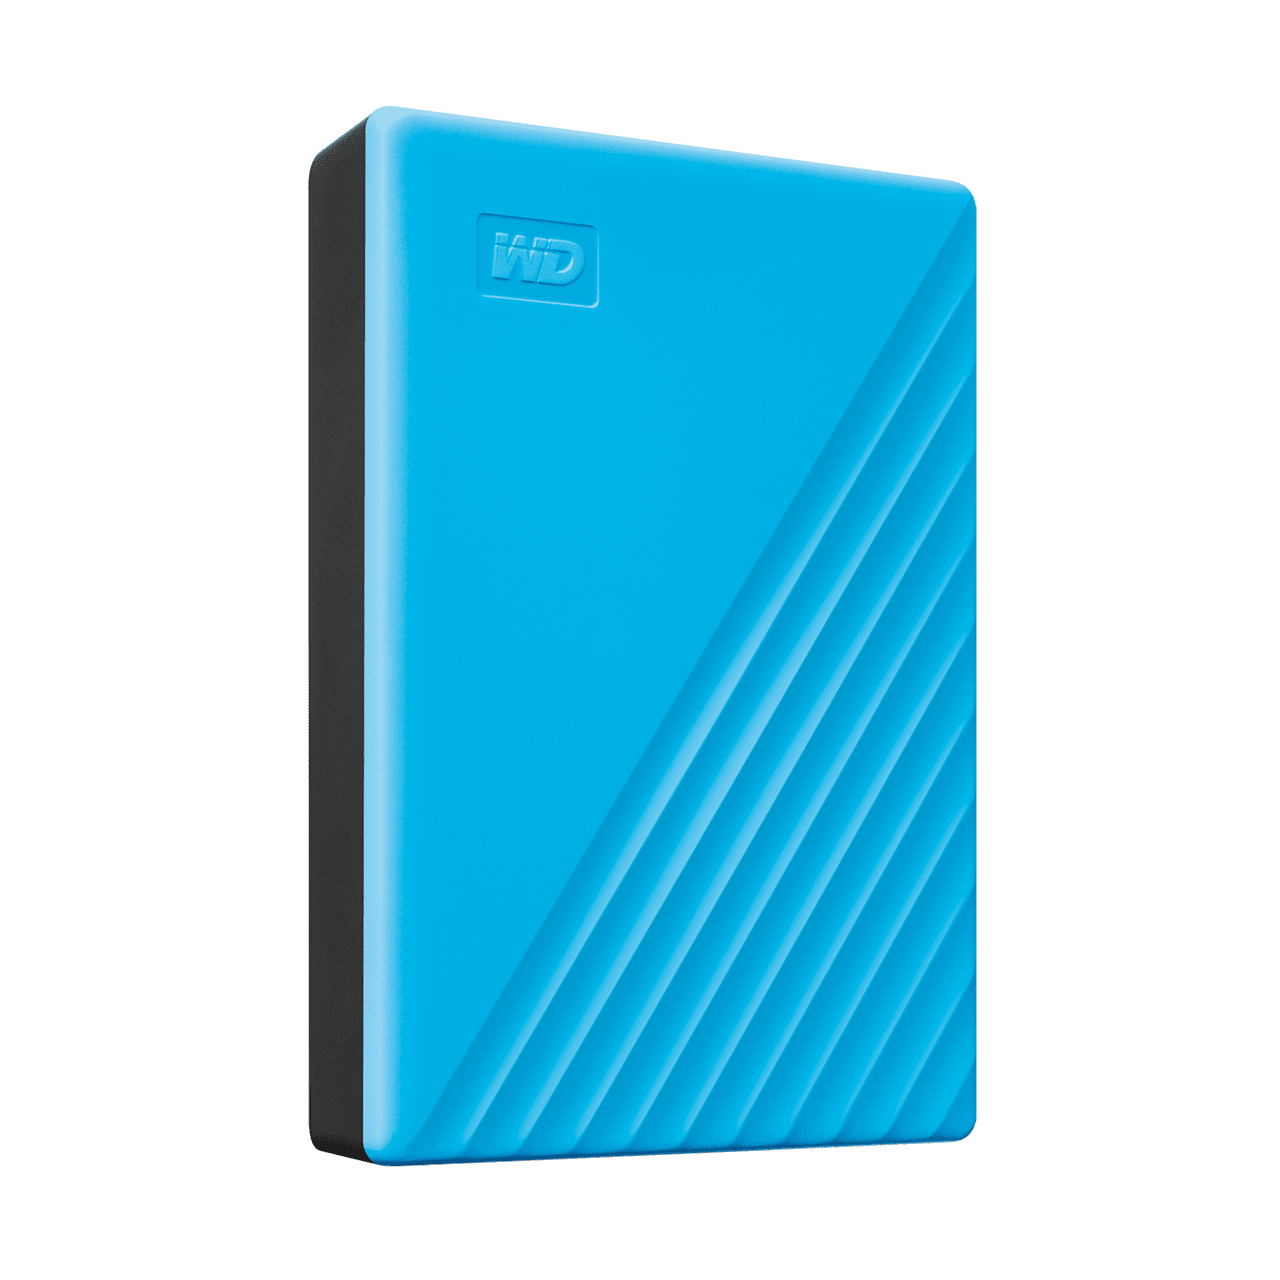 WD MyPassport 5Tb Portable USB 3.2 Hard Drive (Blue)